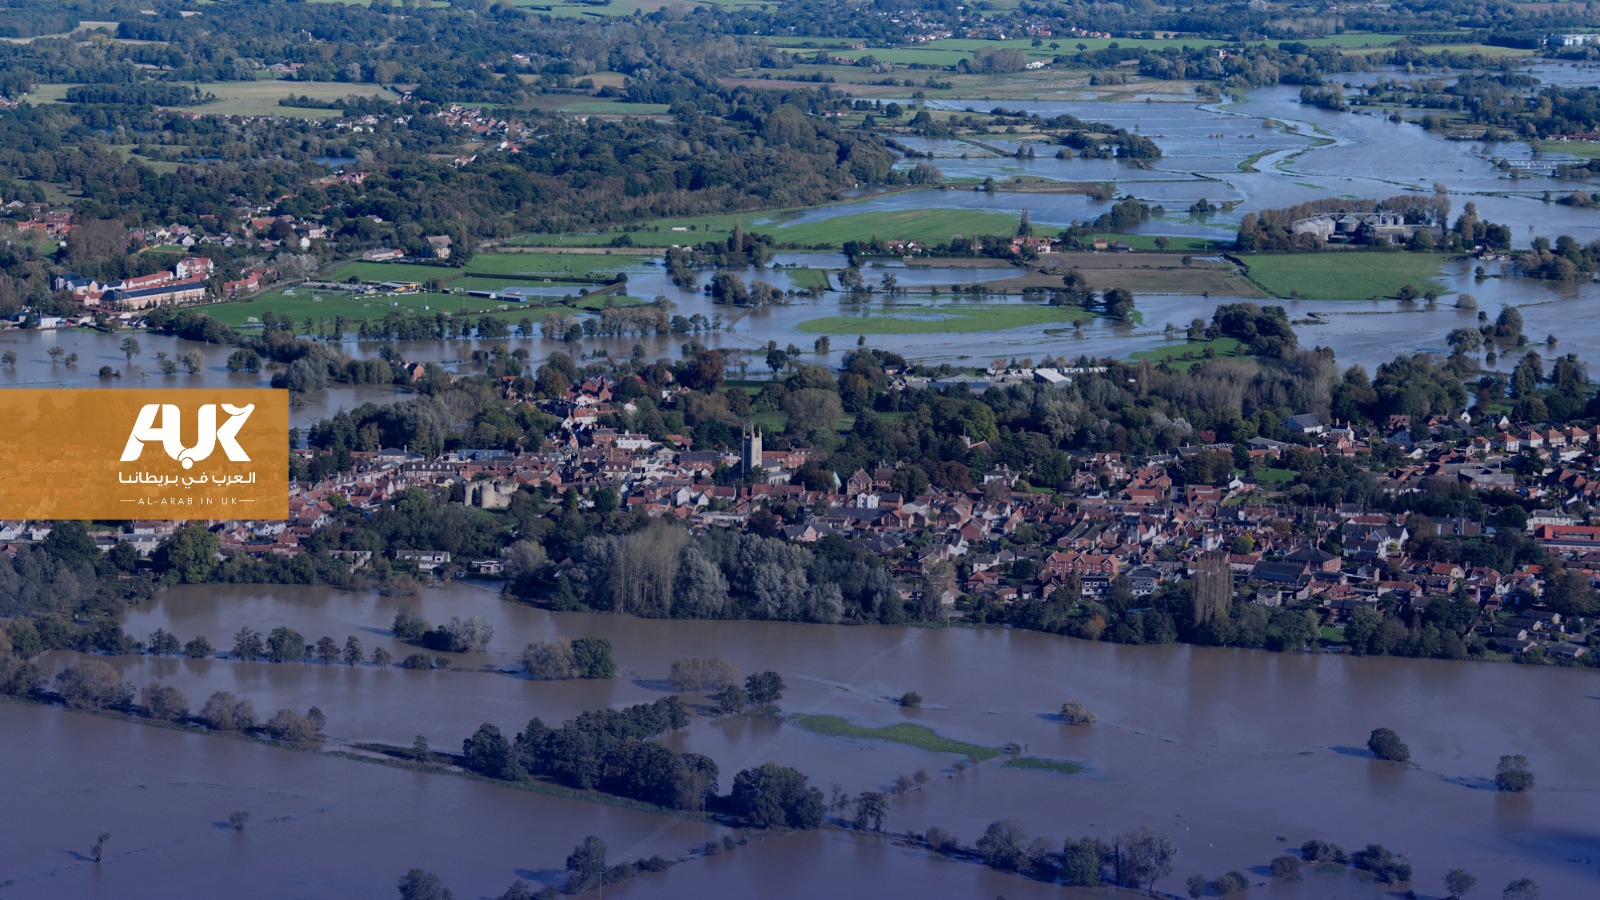 الفيضانات مخاوف حقيقية في مستقبل بريطانيا